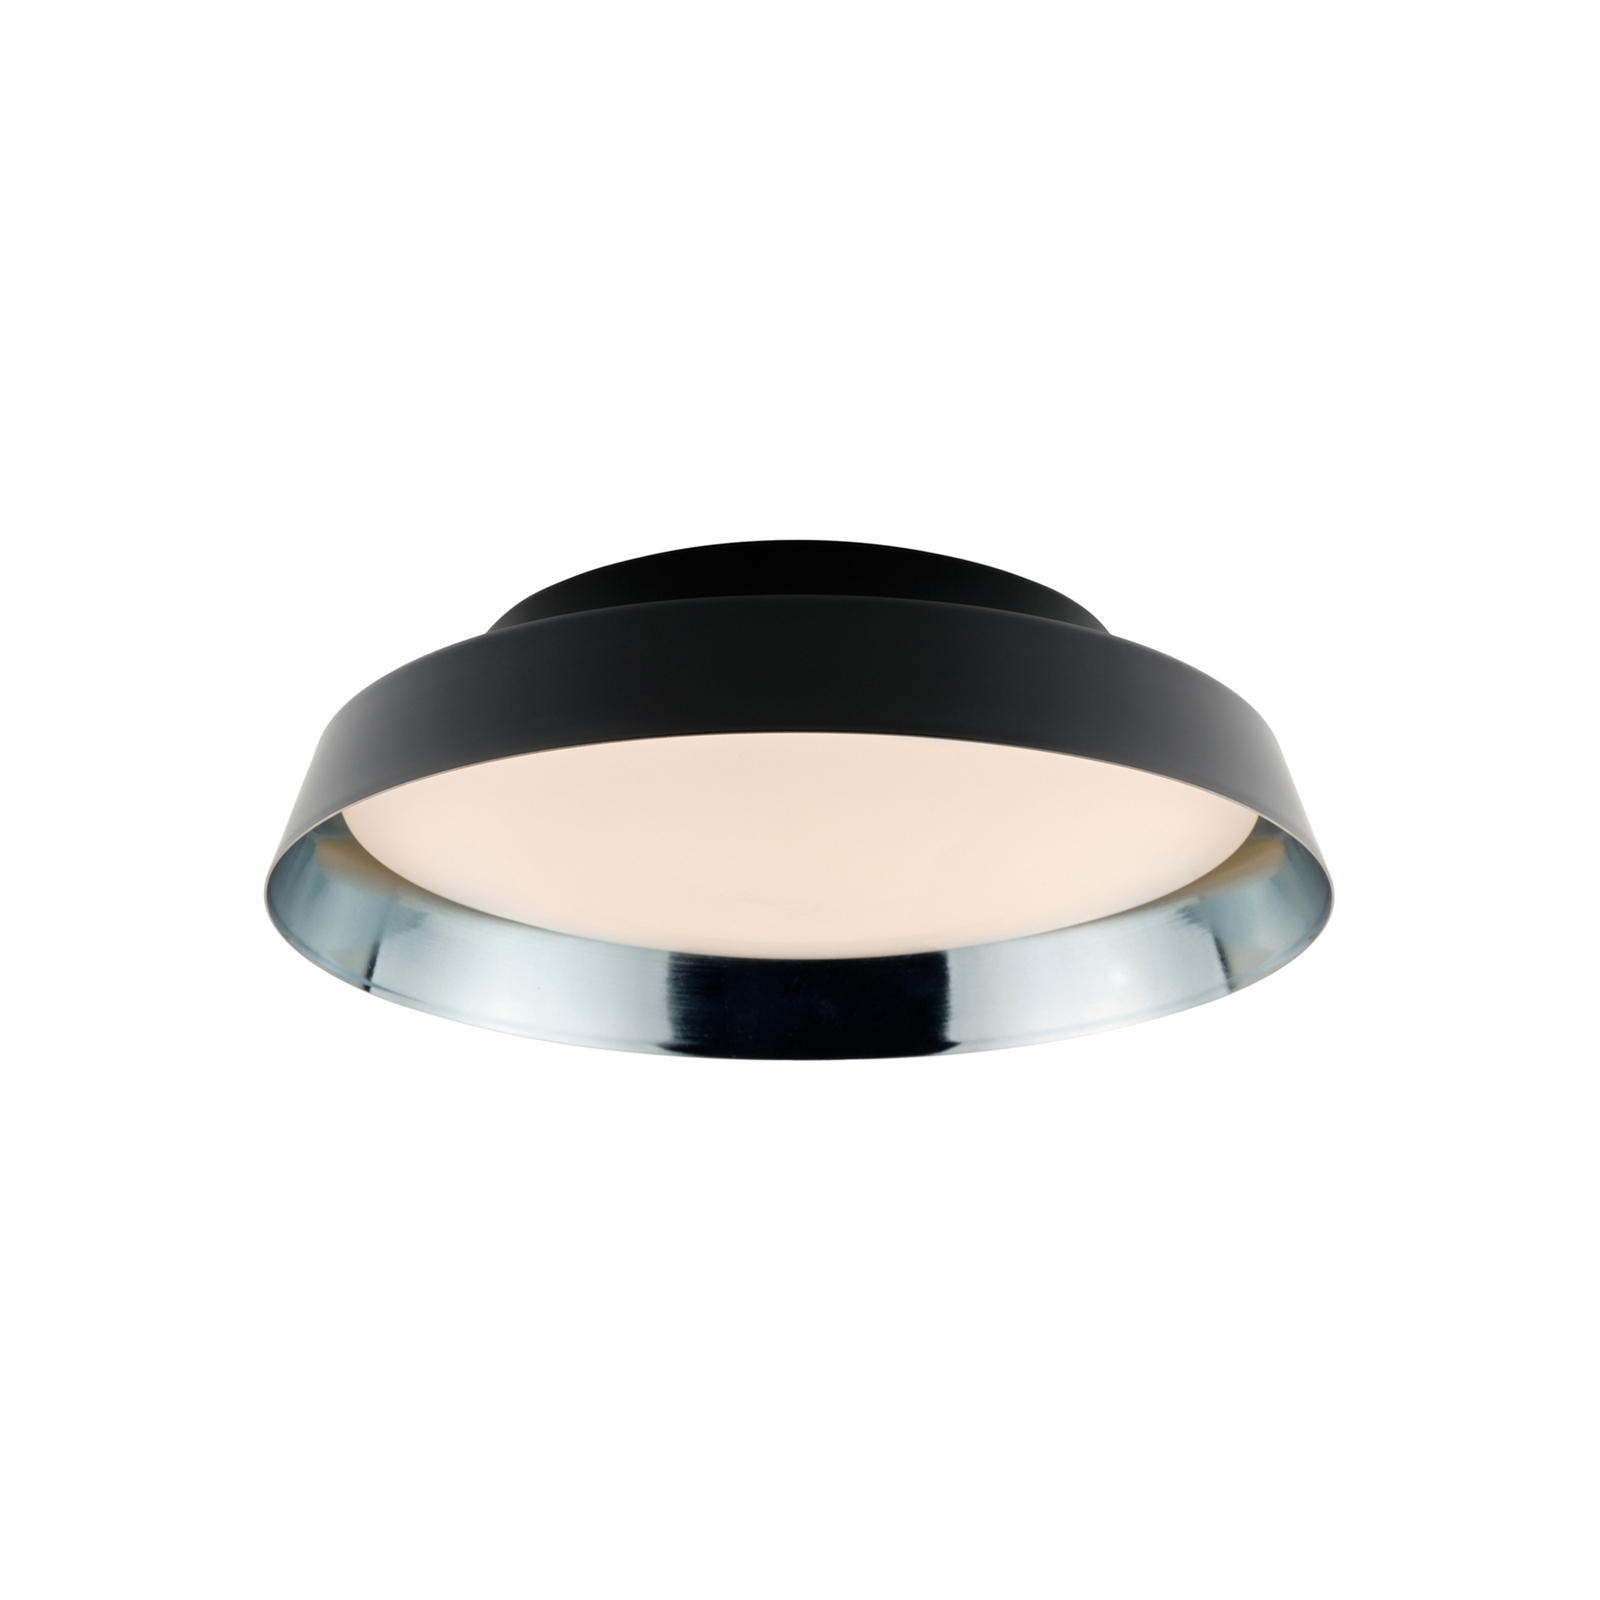 Utendørs LED-taklampe Boop! Ø37cm svart/blågrå